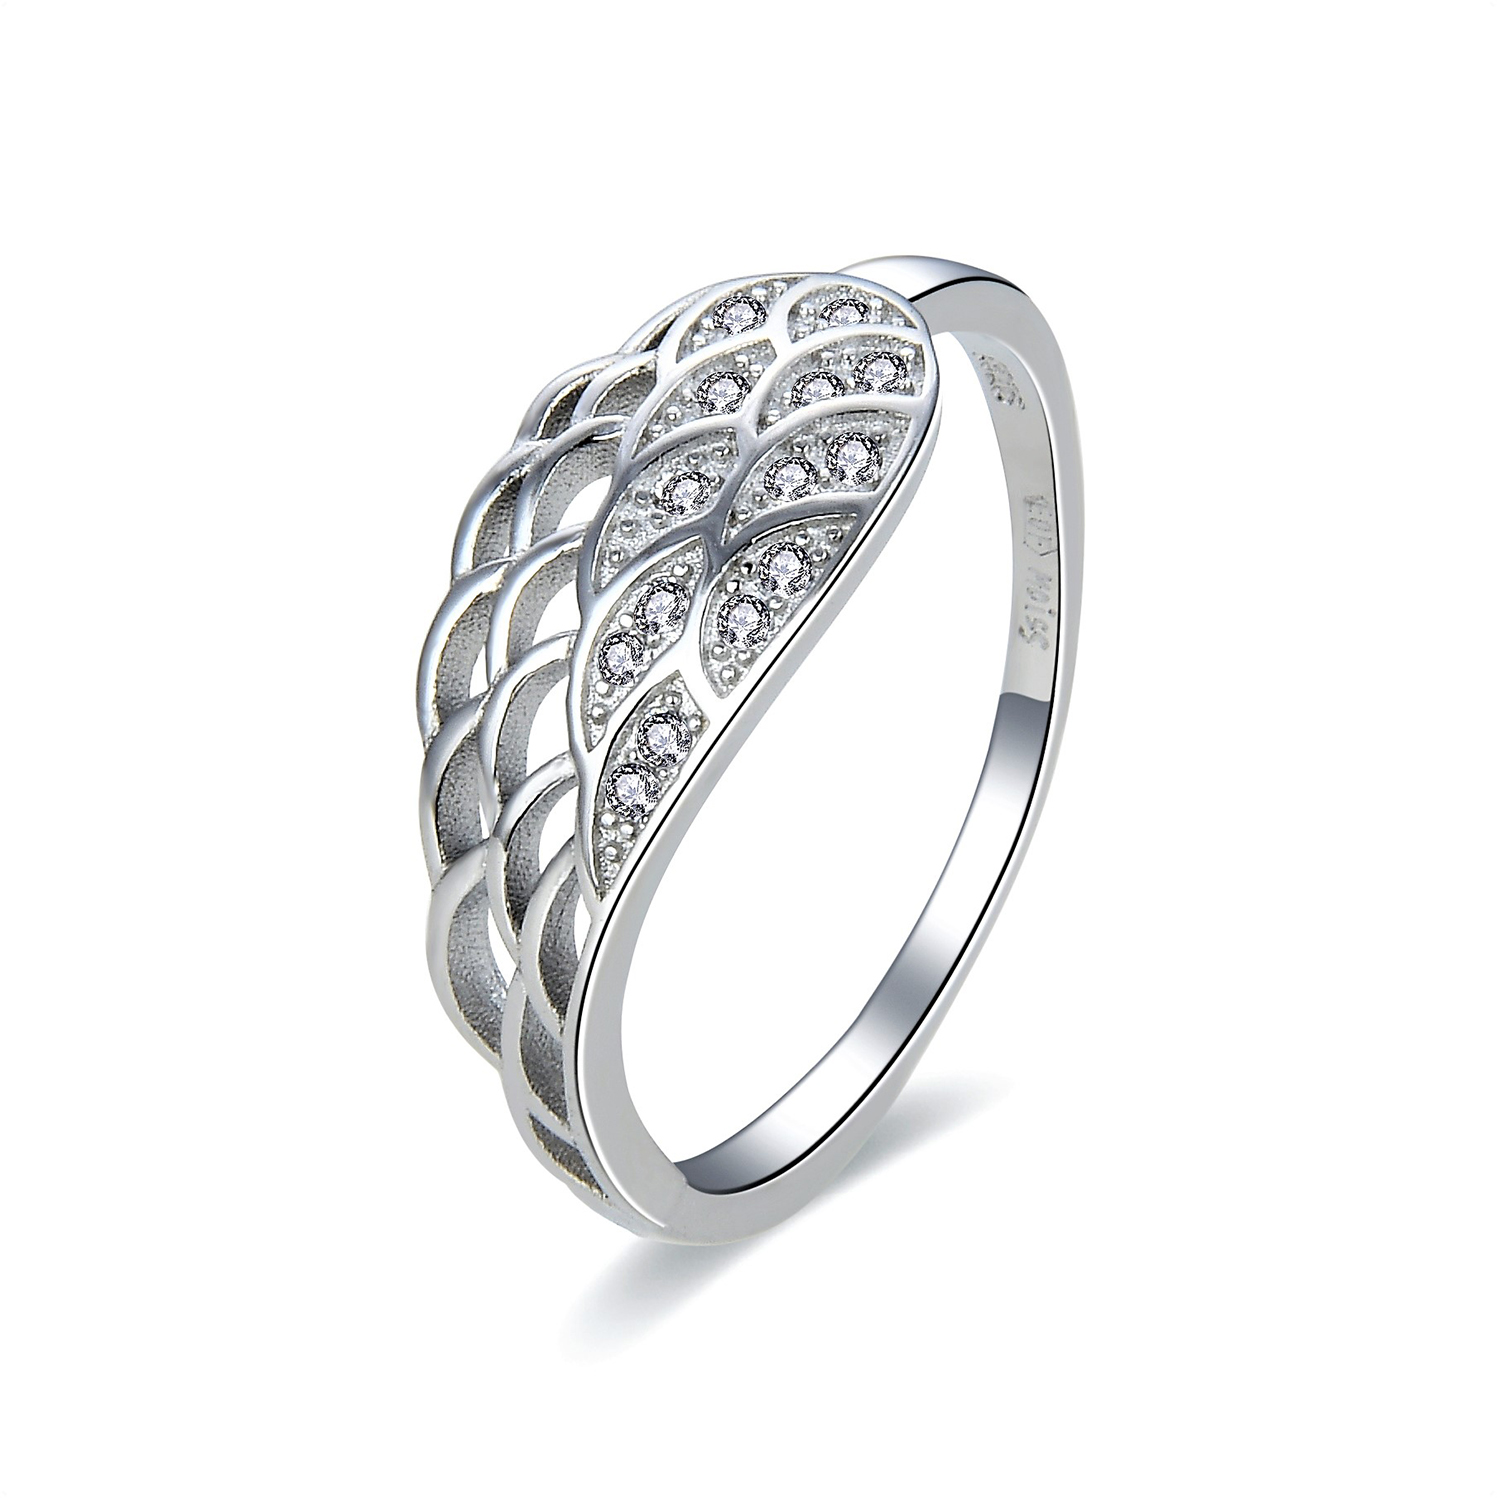 MOISS Moiss stříbrný prsten ANDĚLSKÉ KŘÍDLO R0002757 Velikost 56 mm R0002759